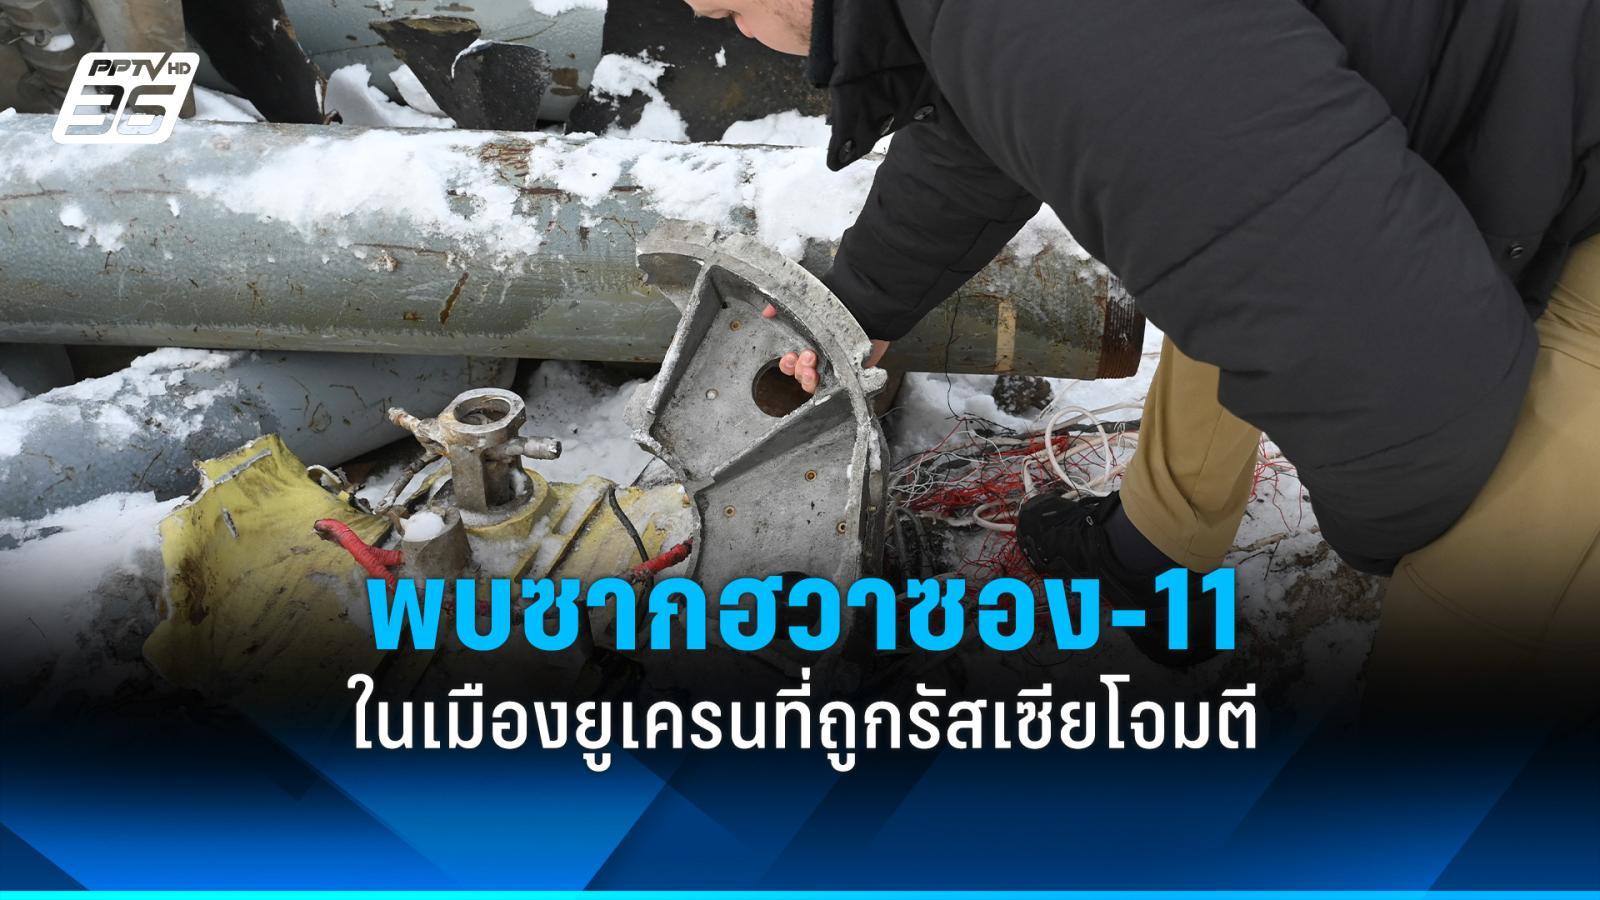 ยูเอ็นพบซากขีปนาวุธ “ฮวาซอง-11” ของเกาหลีเหนือ ในเมืองยูเครนที่ถูกรัสเซียโจมตี